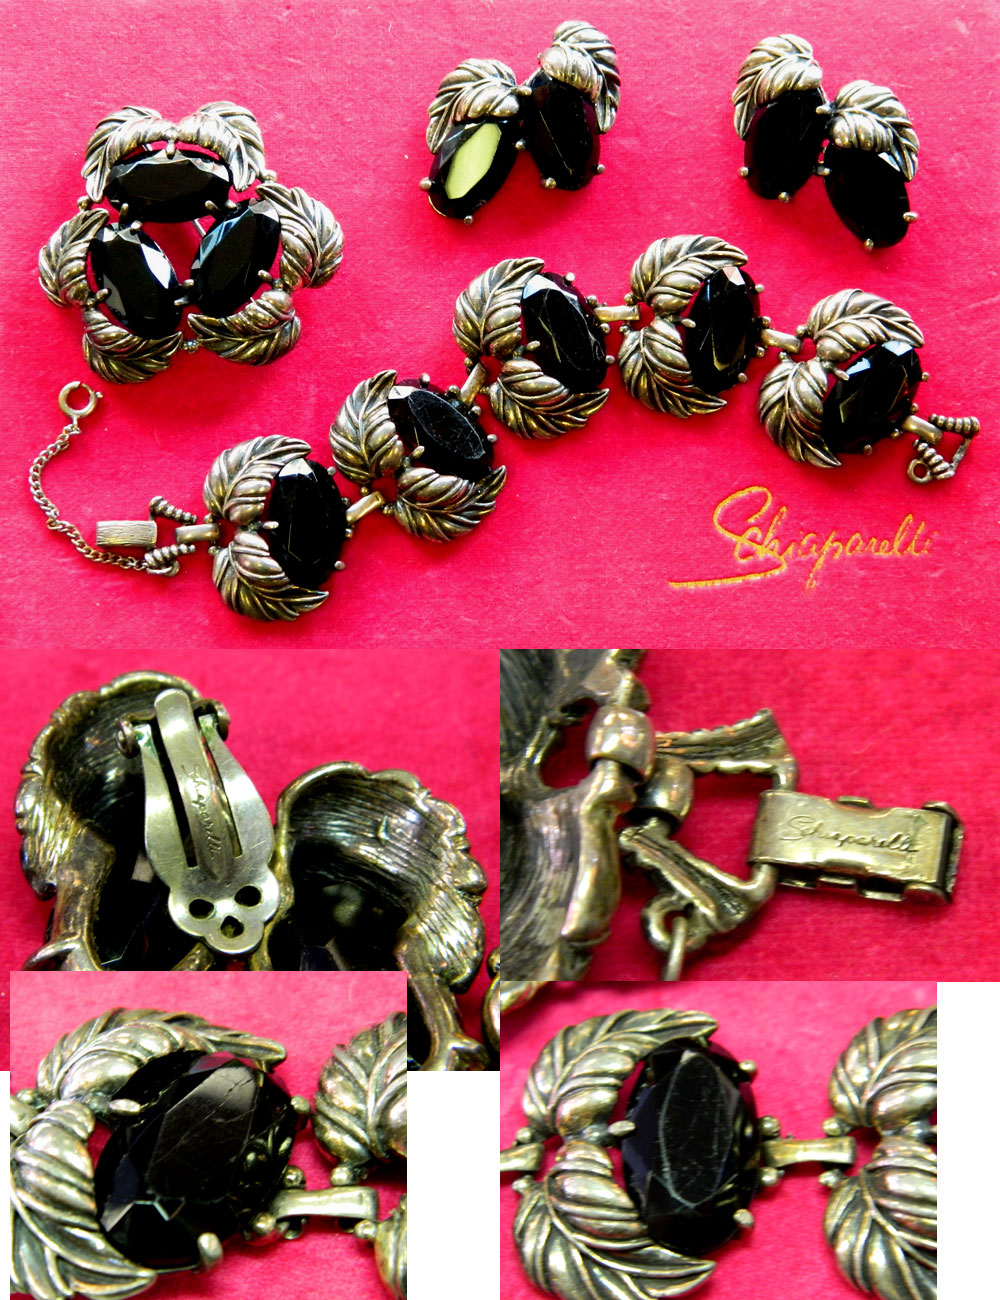 Schiaparelli jewelry set